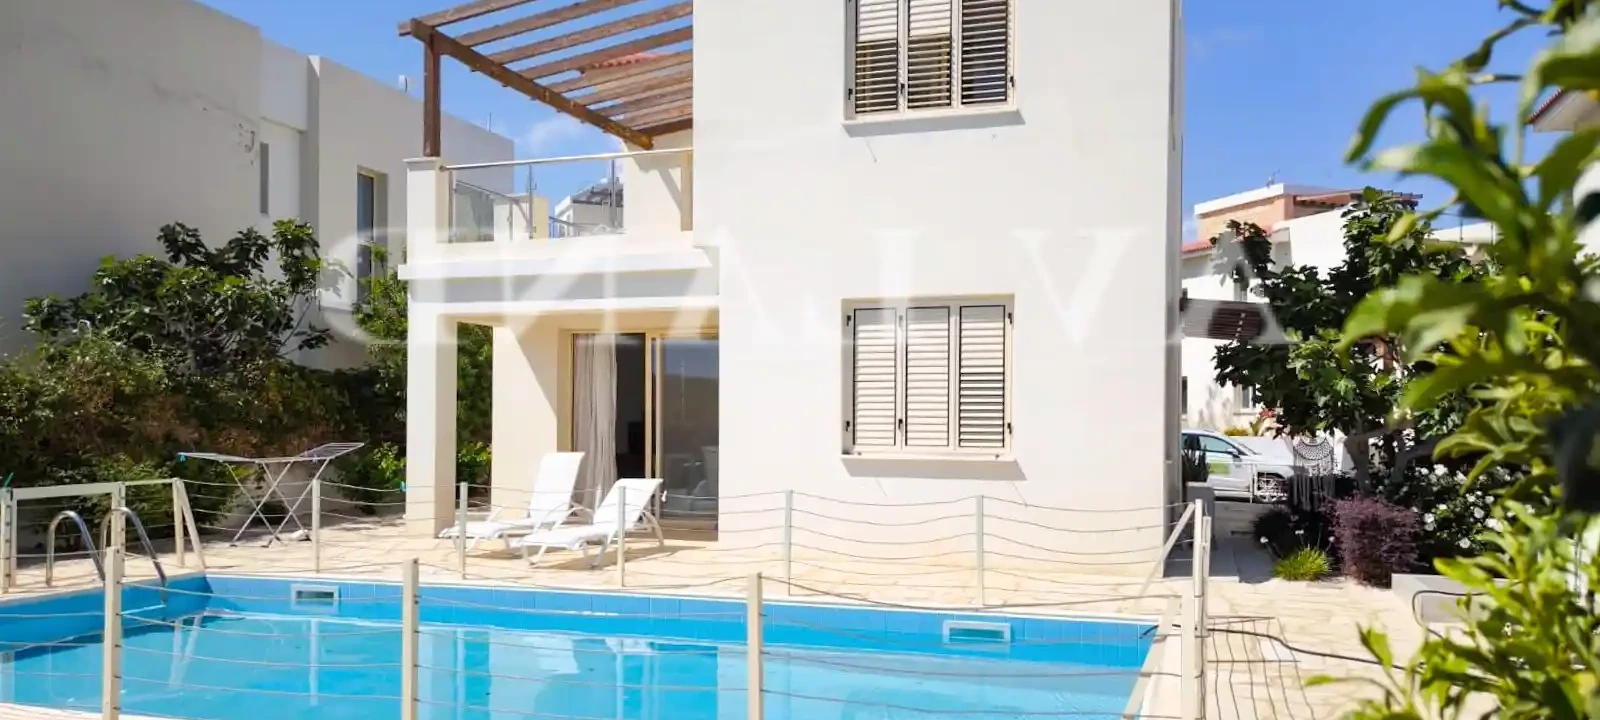 3-bedroom villa to rent €2.000, image 1